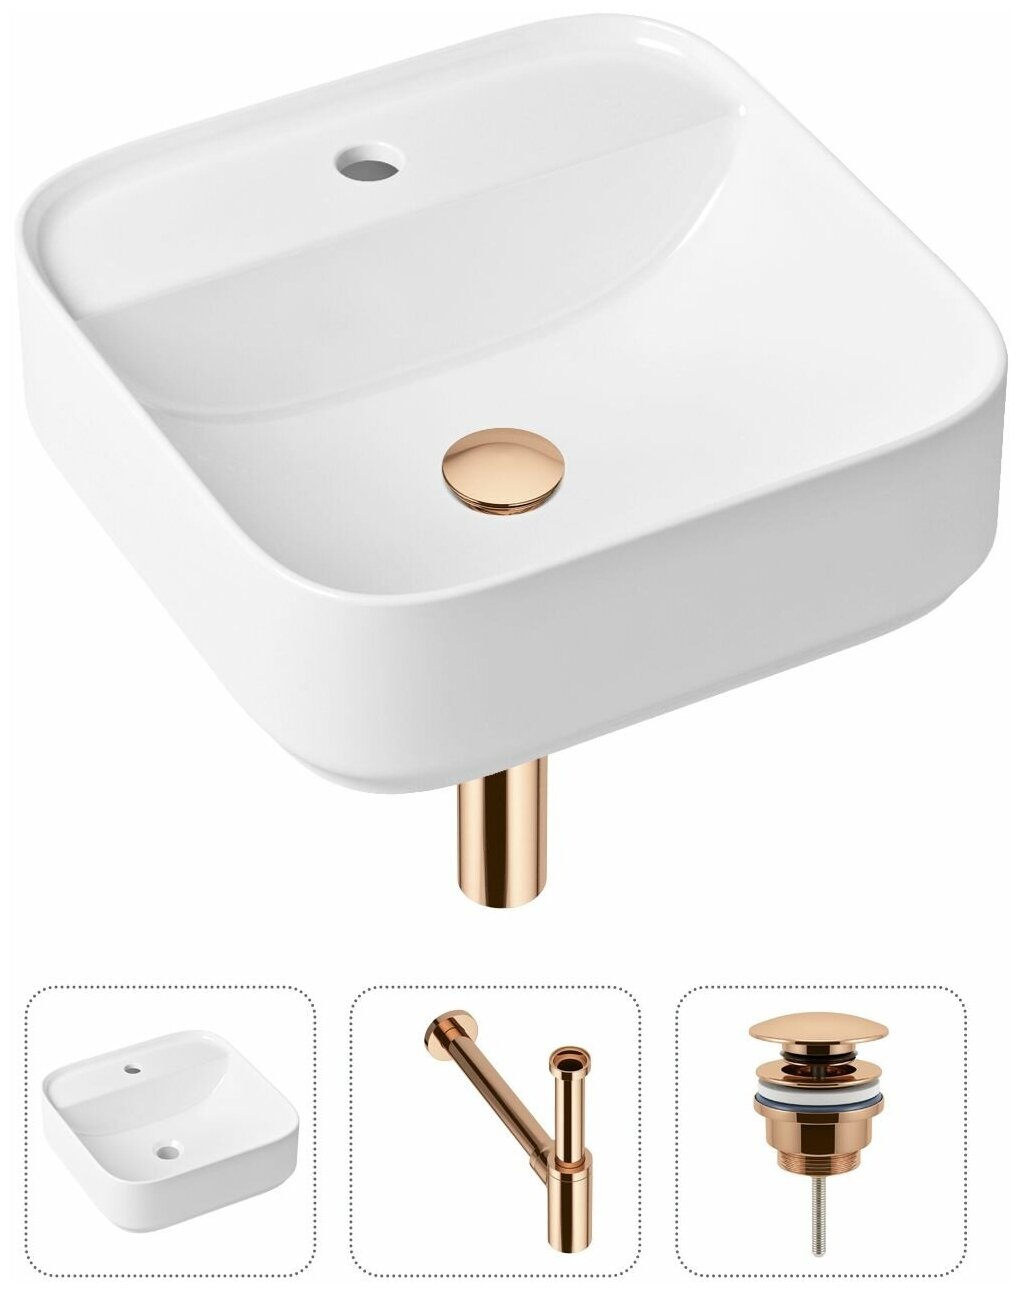 Комплект 3 в 1 Lavinia Boho Bathroom Sink 21520282: накладная фарфоровая раковина 42 см, металлический сифон, донный клапан